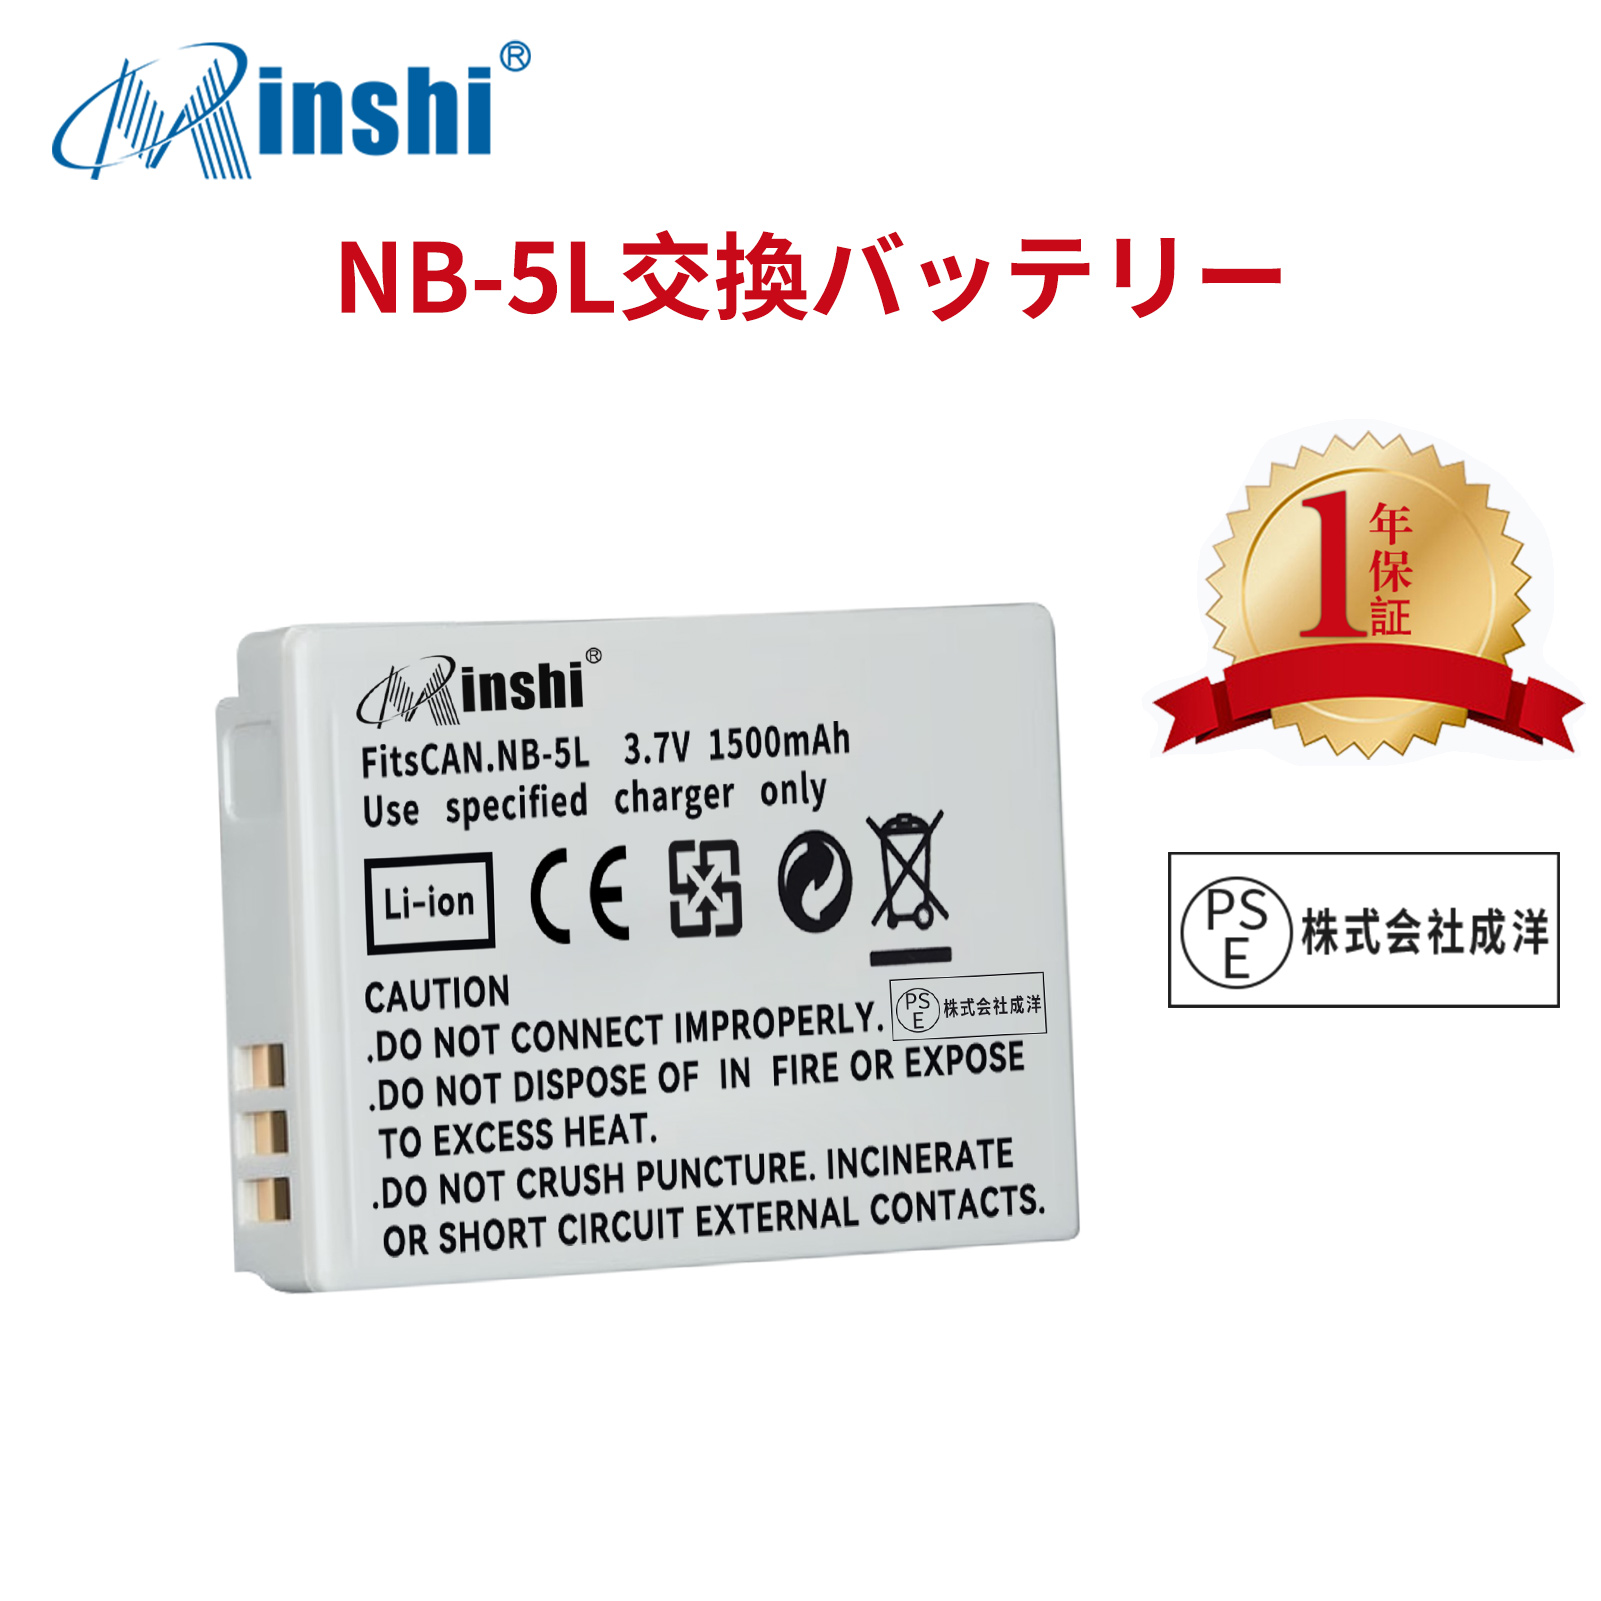 【1年保証】minshi CANON 920IS NB-5L  NB-5L【1500mAh 3.7V】PSE認定済 高品質交換用バッテリー